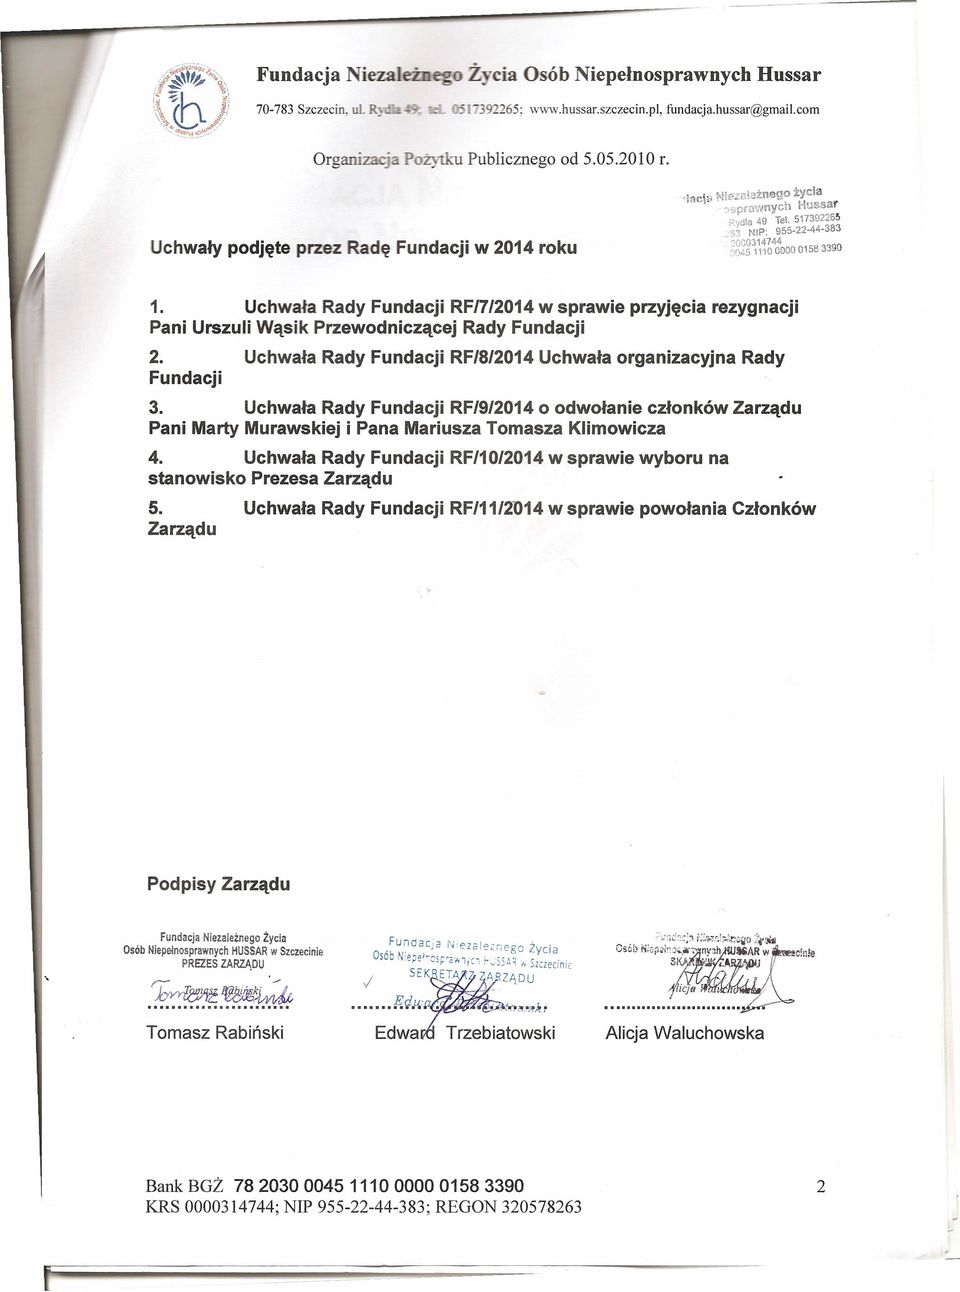 Uchwała Rady Fundacji RF/7/2014w sprawie przyjęcia rezygnacji Pani Urszuli Wąsik Przewodniczącej Rady Fundacji 2. Uchwała Rady Fundacji RF/8/2014Uchwała organizacyjna Rady Fundacji 3.